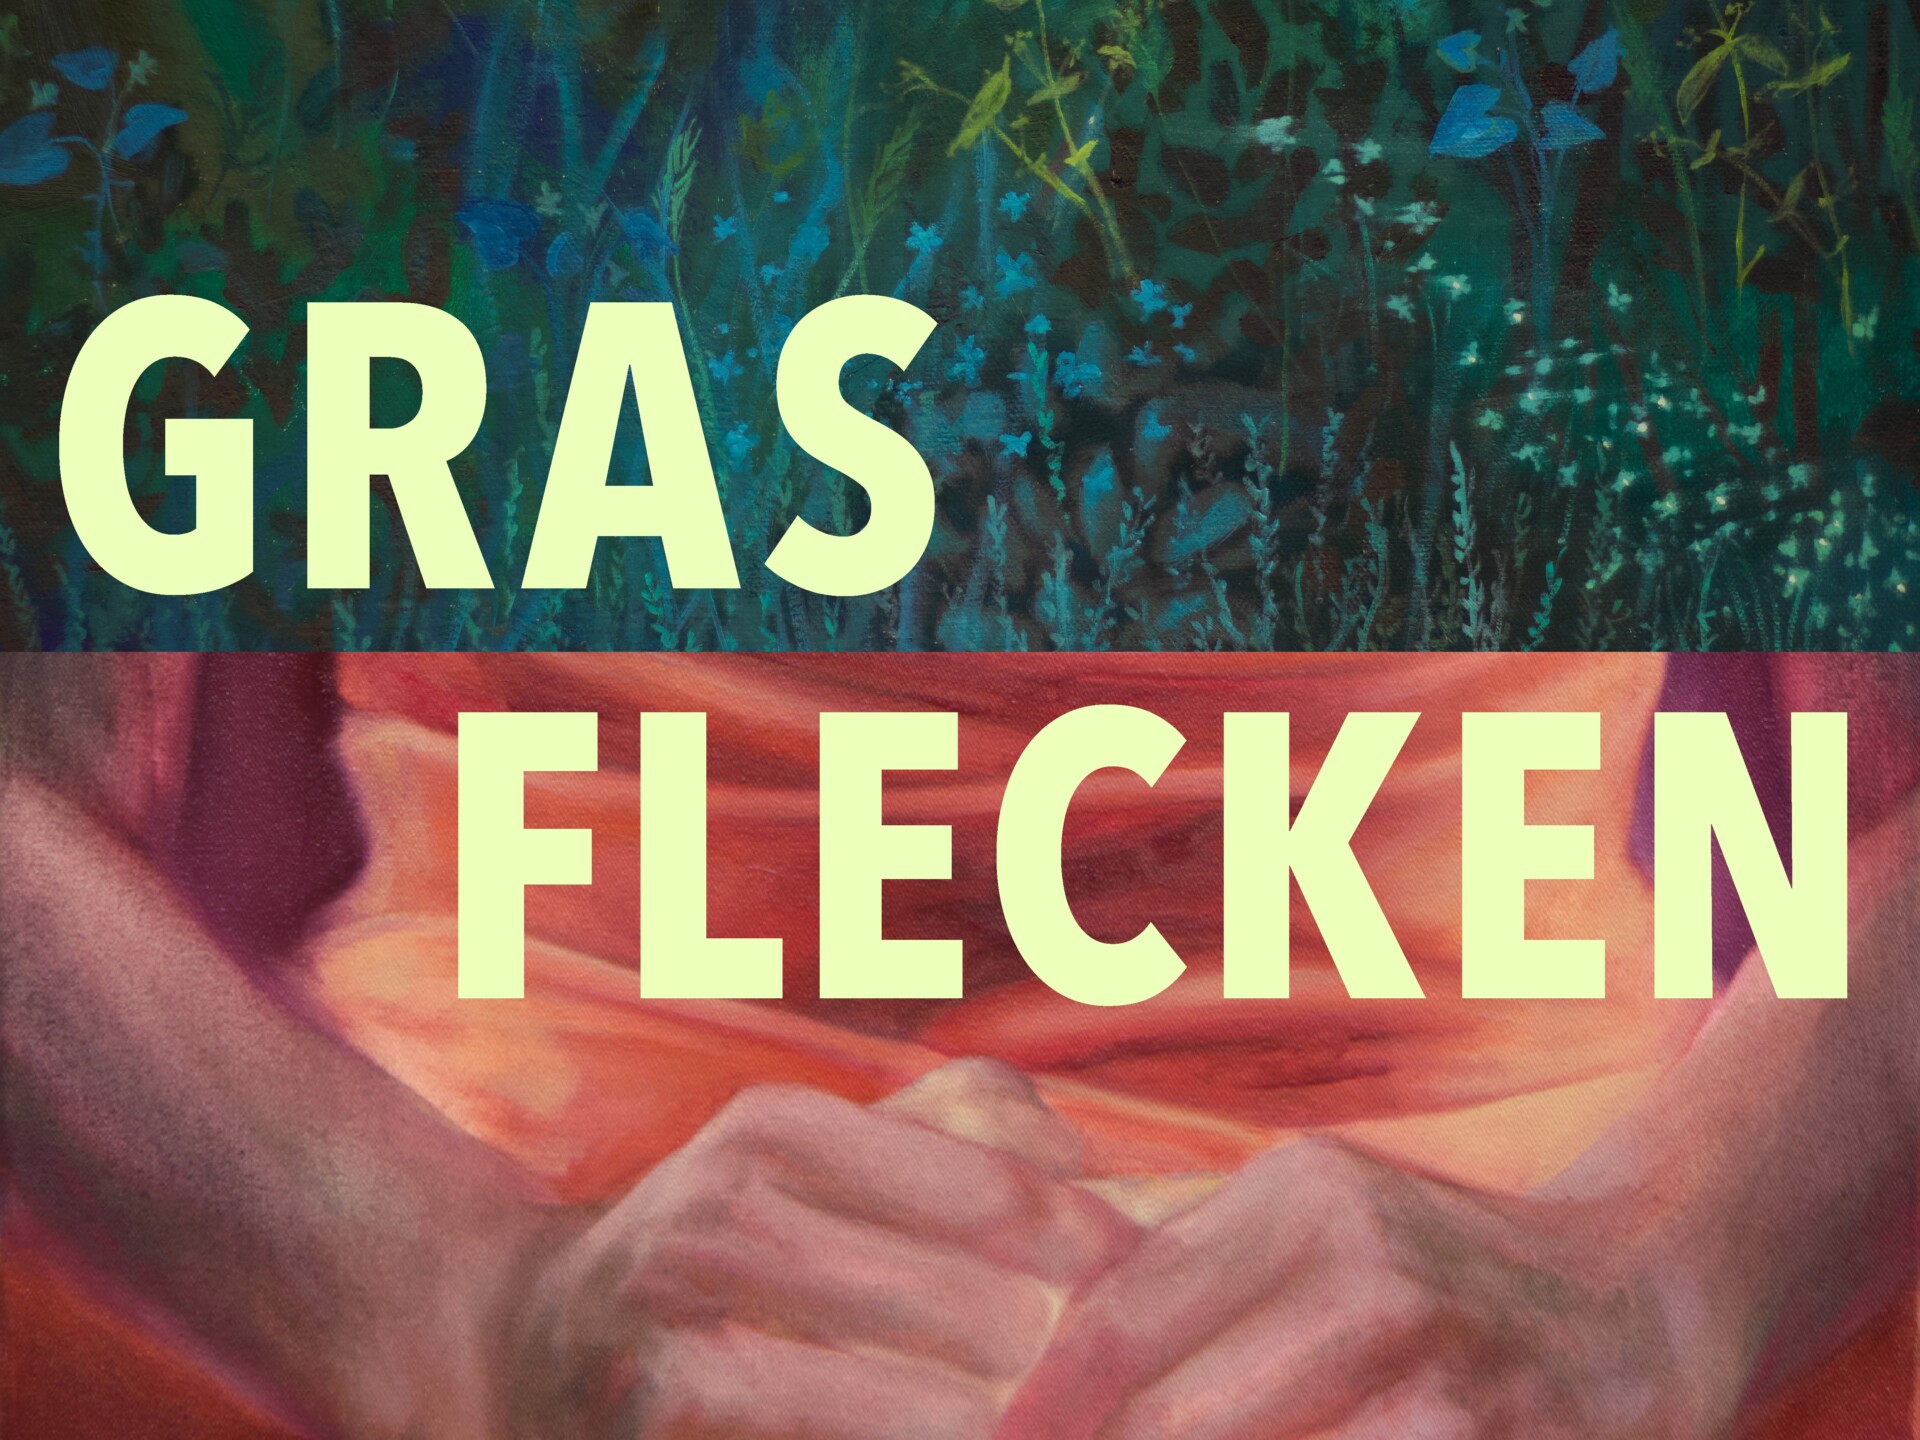 Grasflecken - Eine Ausstellung von Michelle Mousavi und Svea Kittel